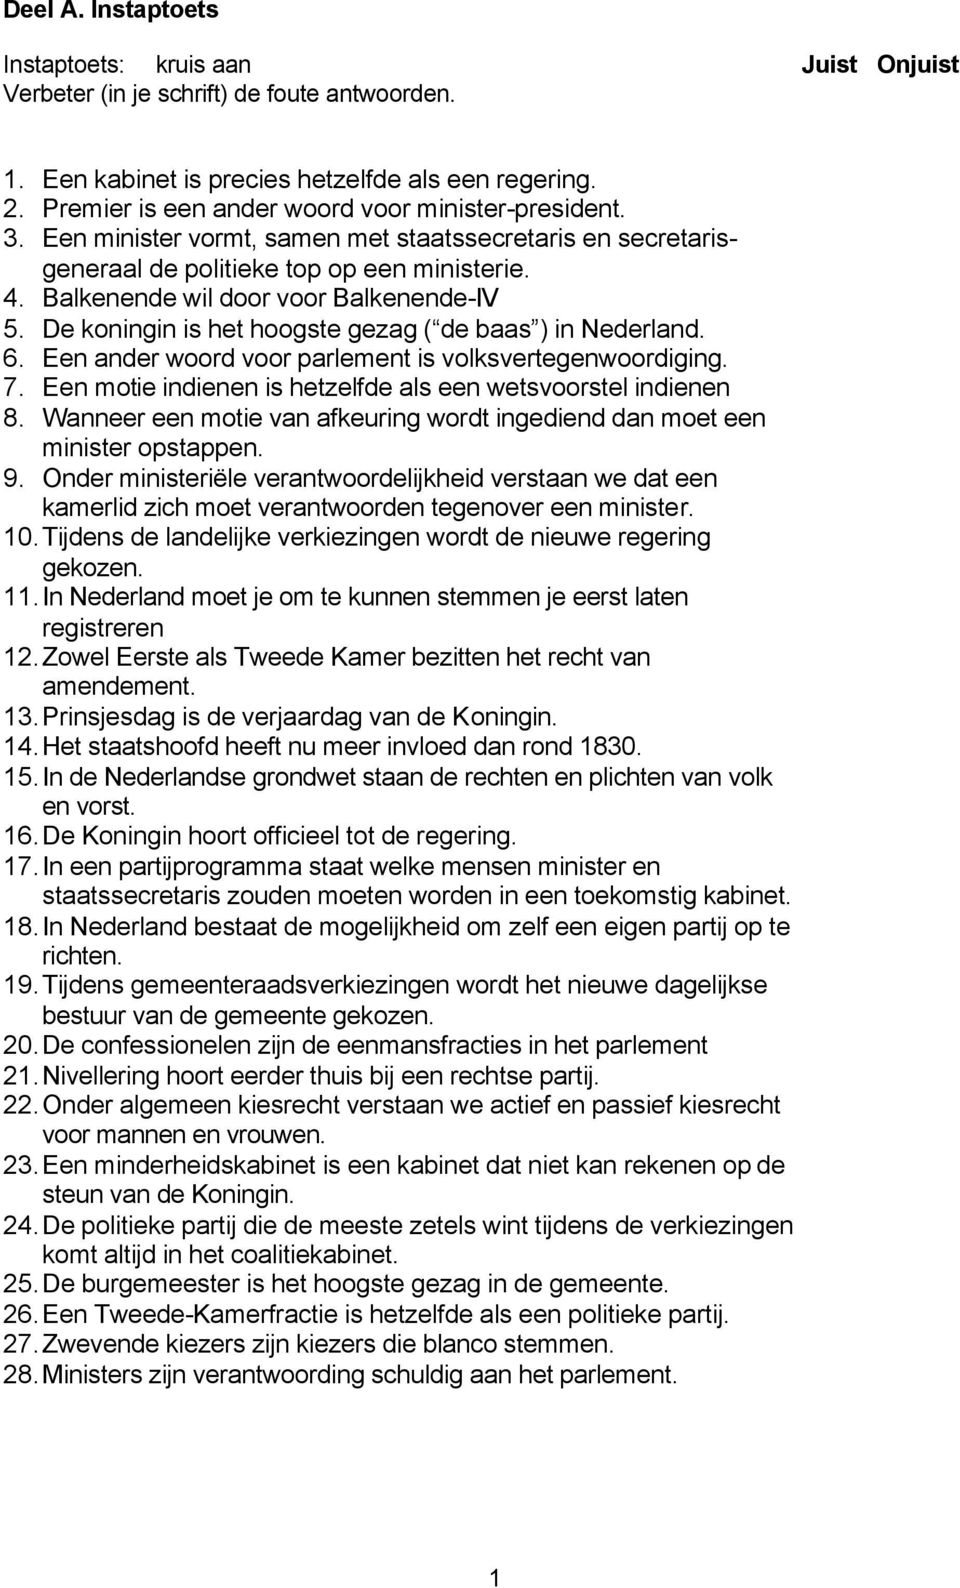 Balkenende wil door voor Balkenende-IV 5. De koningin is het hoogste gezag ( de baas ) in Nederland. 6. Een ander woord voor parlement is volksvertegenwoordiging. 7.